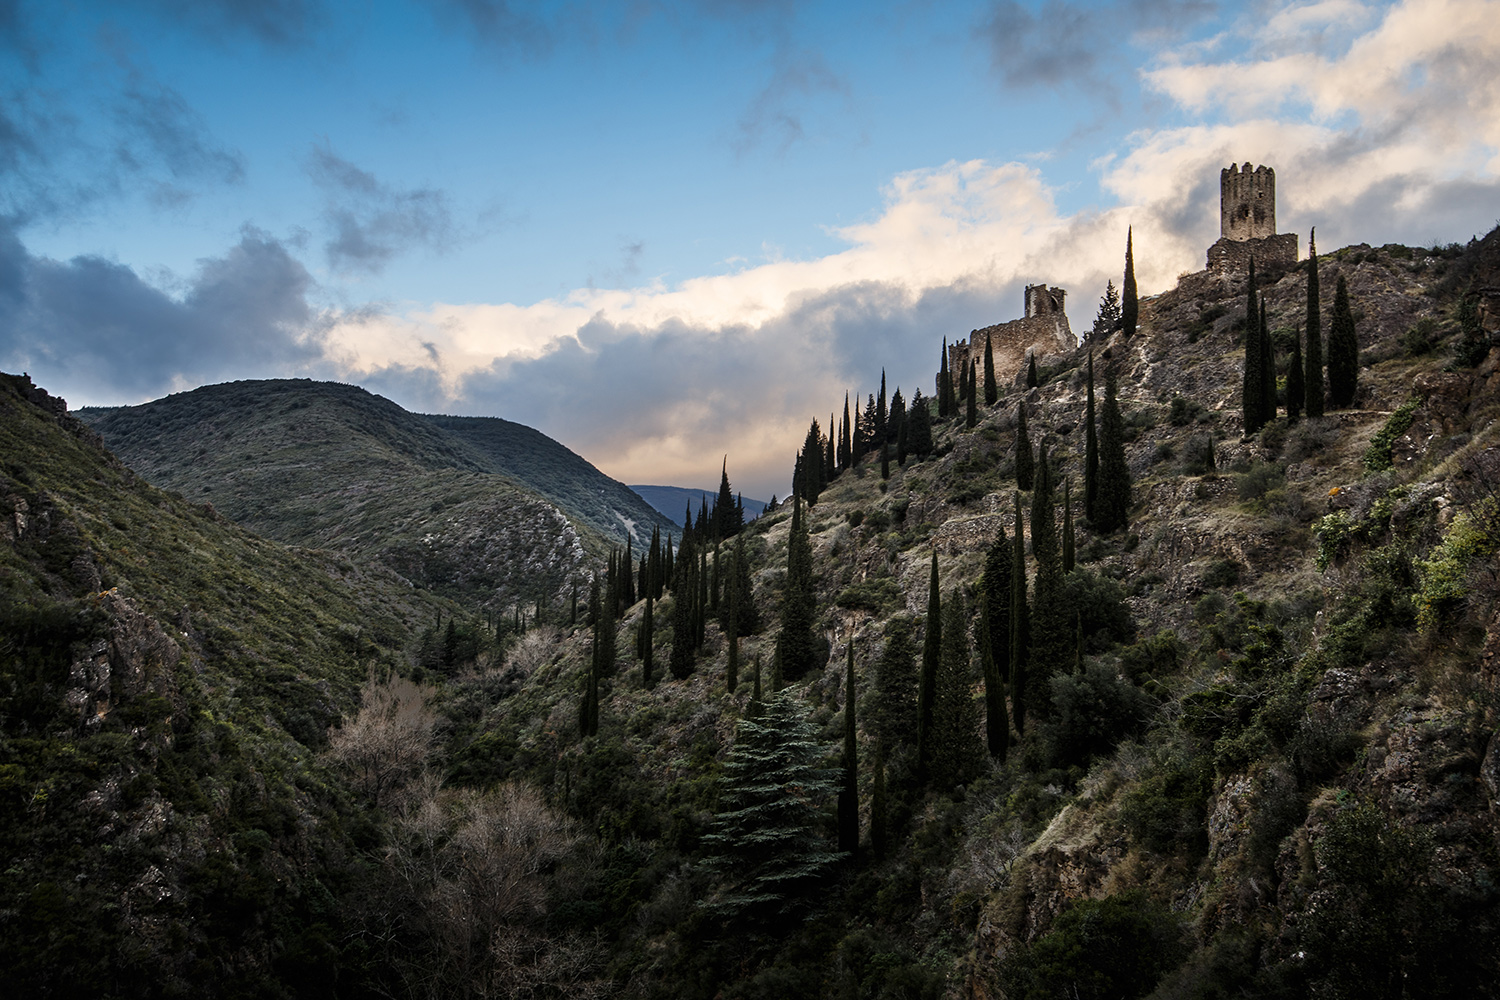 Les châteaux de Lastours se situent à 300 m d’altitude au-dessus de l’Orbiel et le torrent du Grésilhou